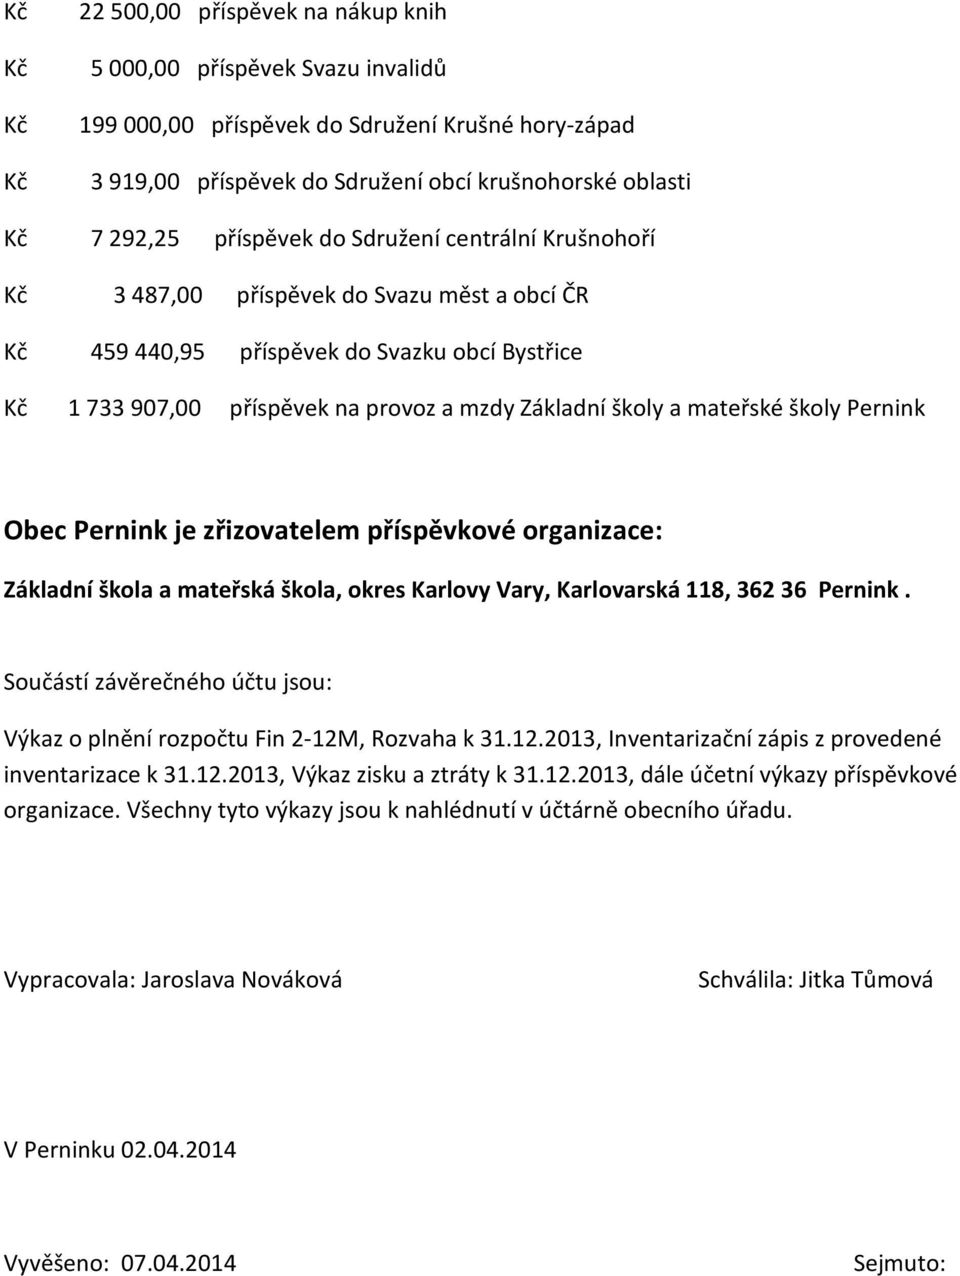 Obec Pernink je zřizovatelem příspěvkové organizace: Základní škola a mateřská škola, okres Karlovy Vary, Karlovarská 118, 362 36 Pernink.